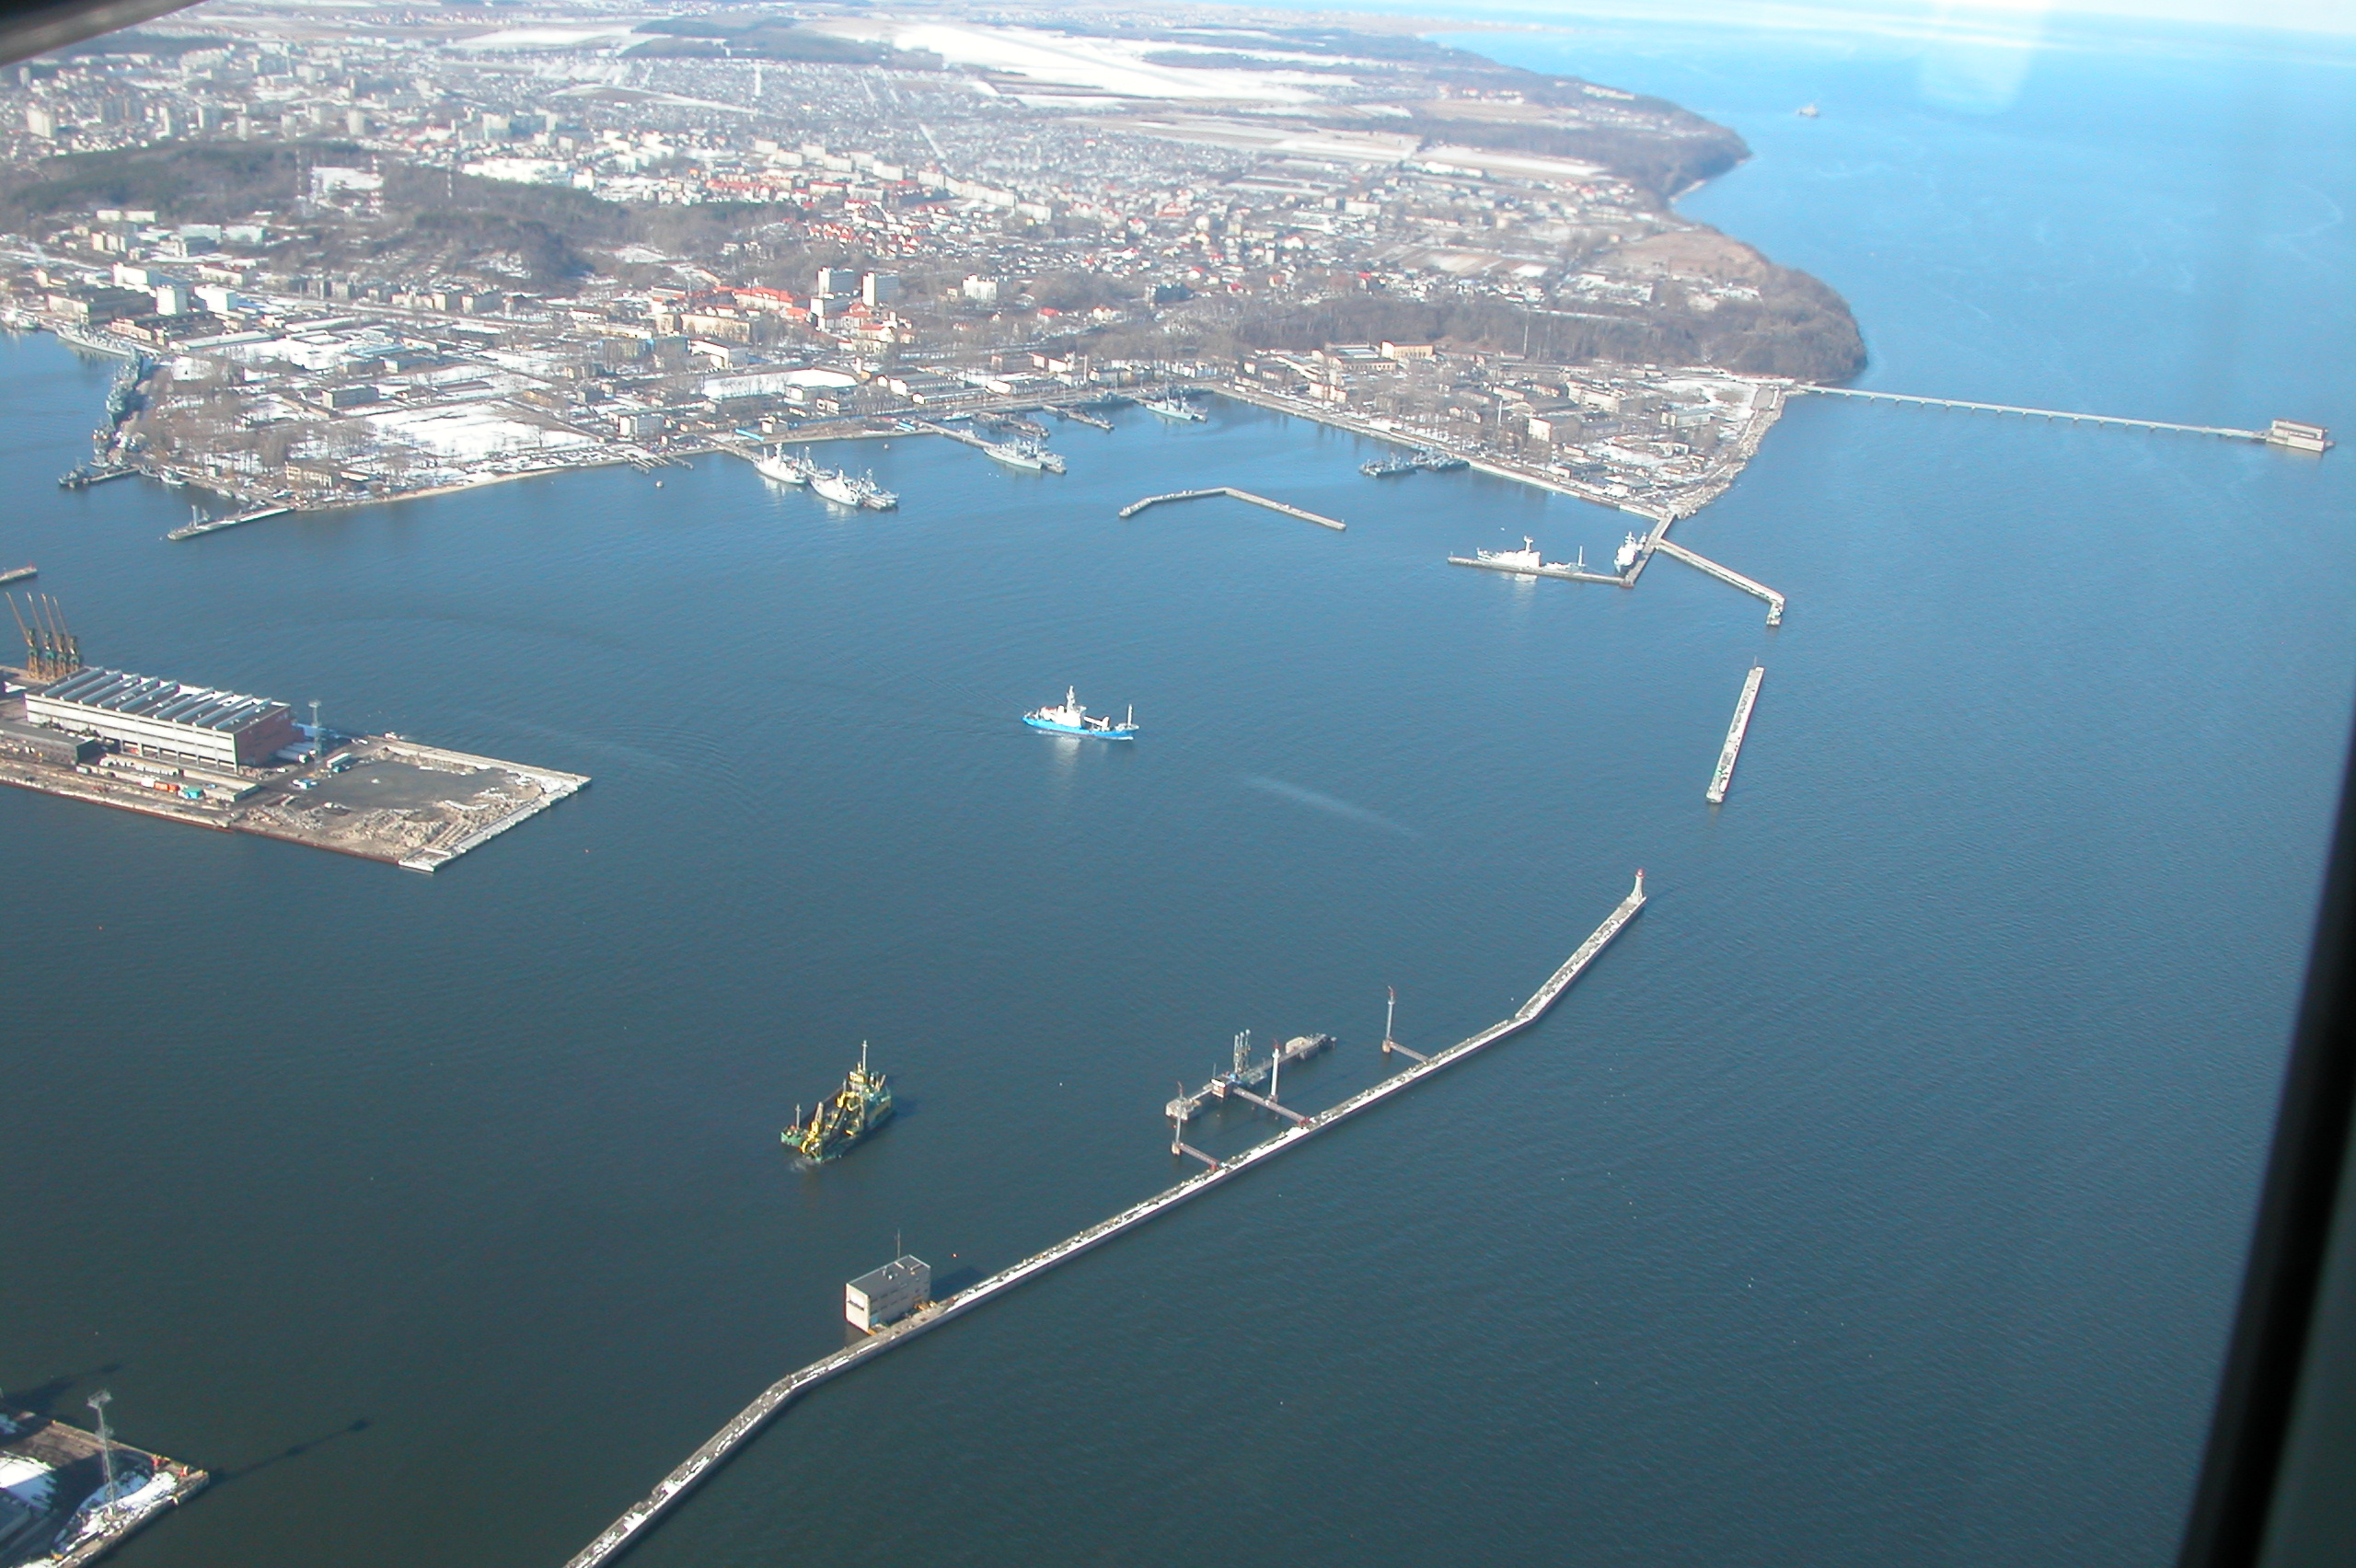 Falochron Główny w Gdyni - widok z lotu ptaka